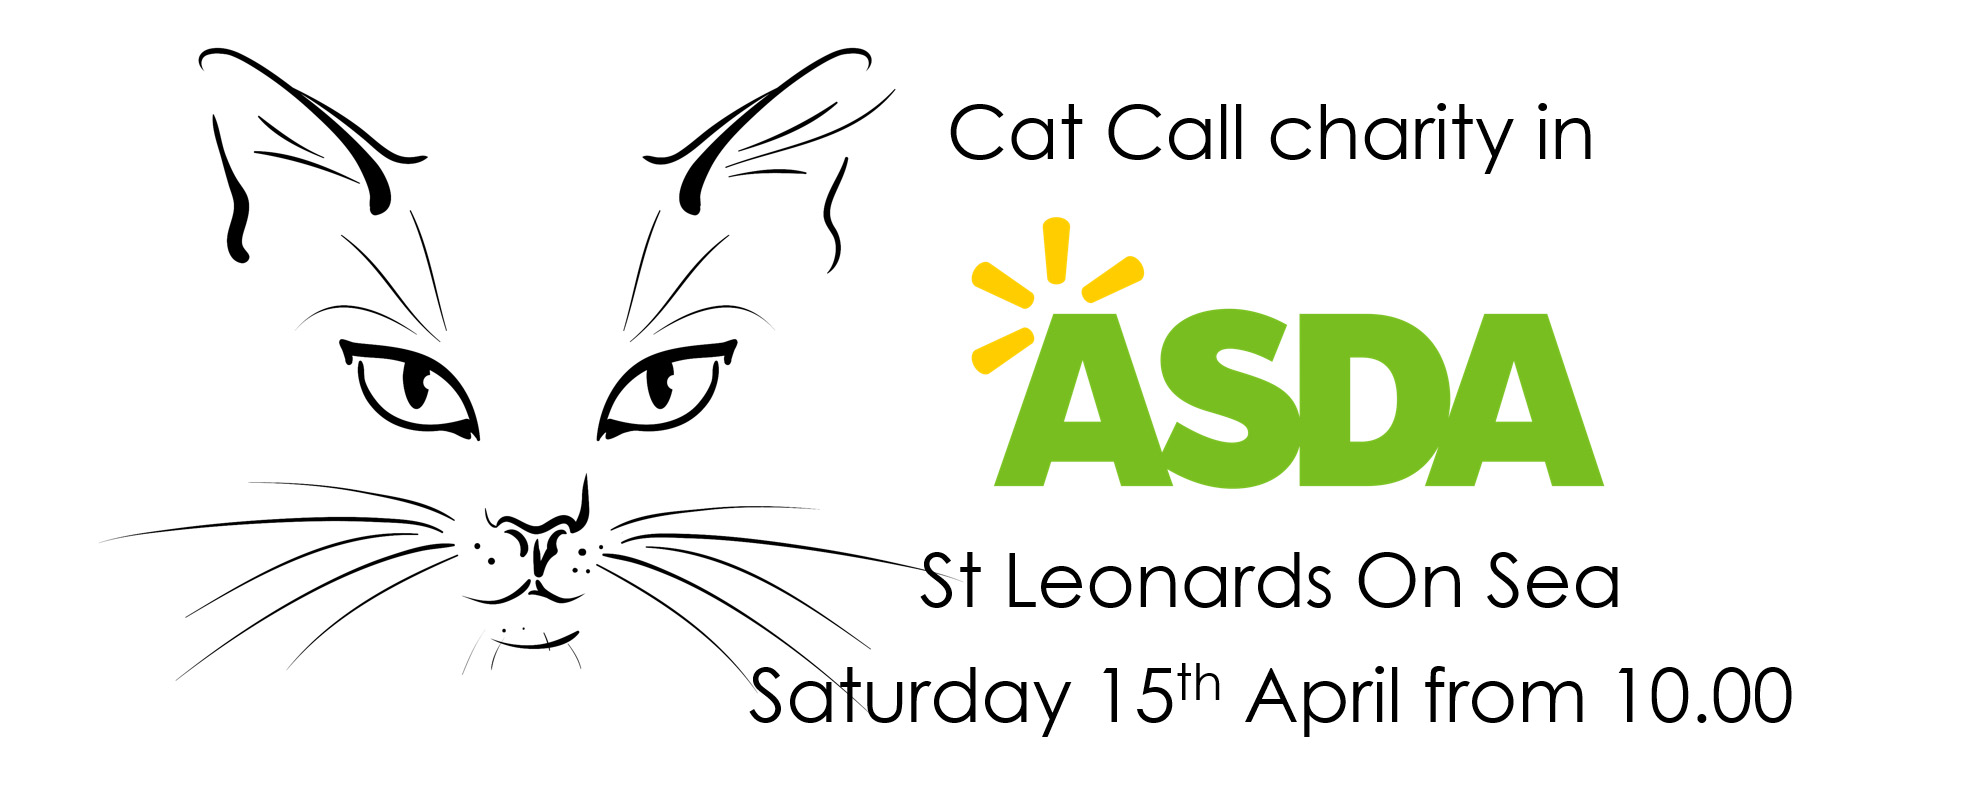 Cat Call charity fund raising